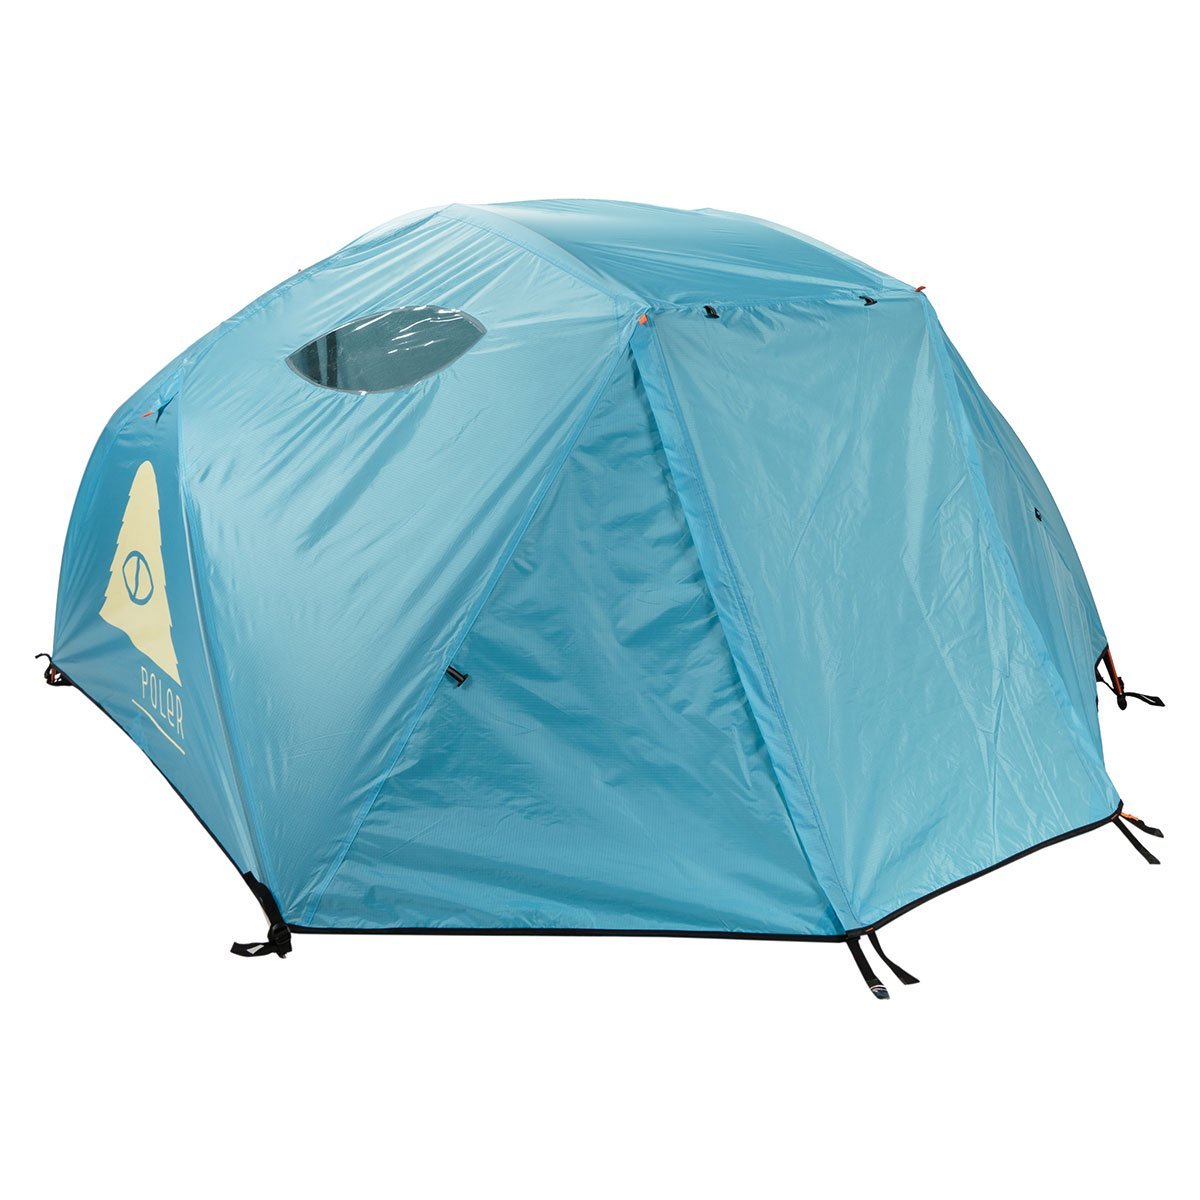 ポーラー テント 正規販売店 POLER アウトドア 二人用テント ドーム型